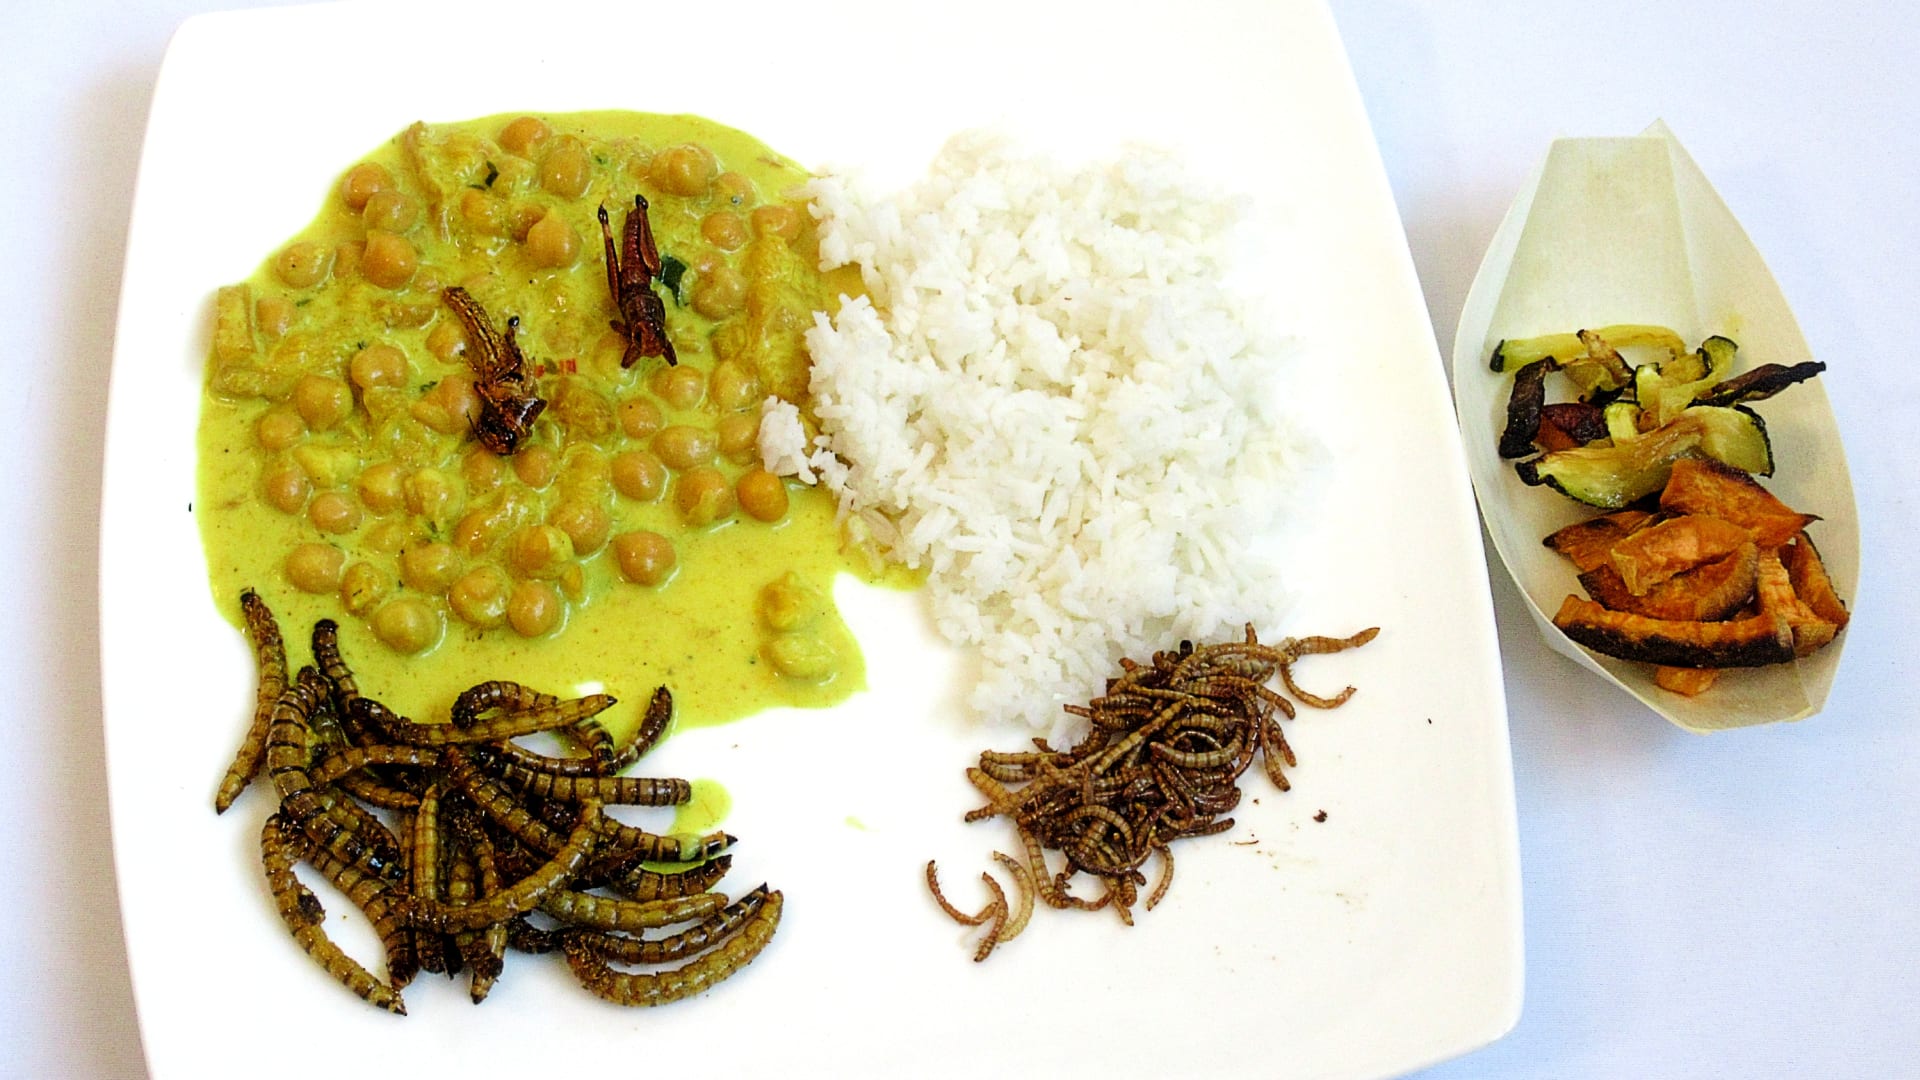 Vzpomínka na Indii (hmyz vícero druhů v pikantní omáčce s kokosovým mlékem, mangem a rýží)